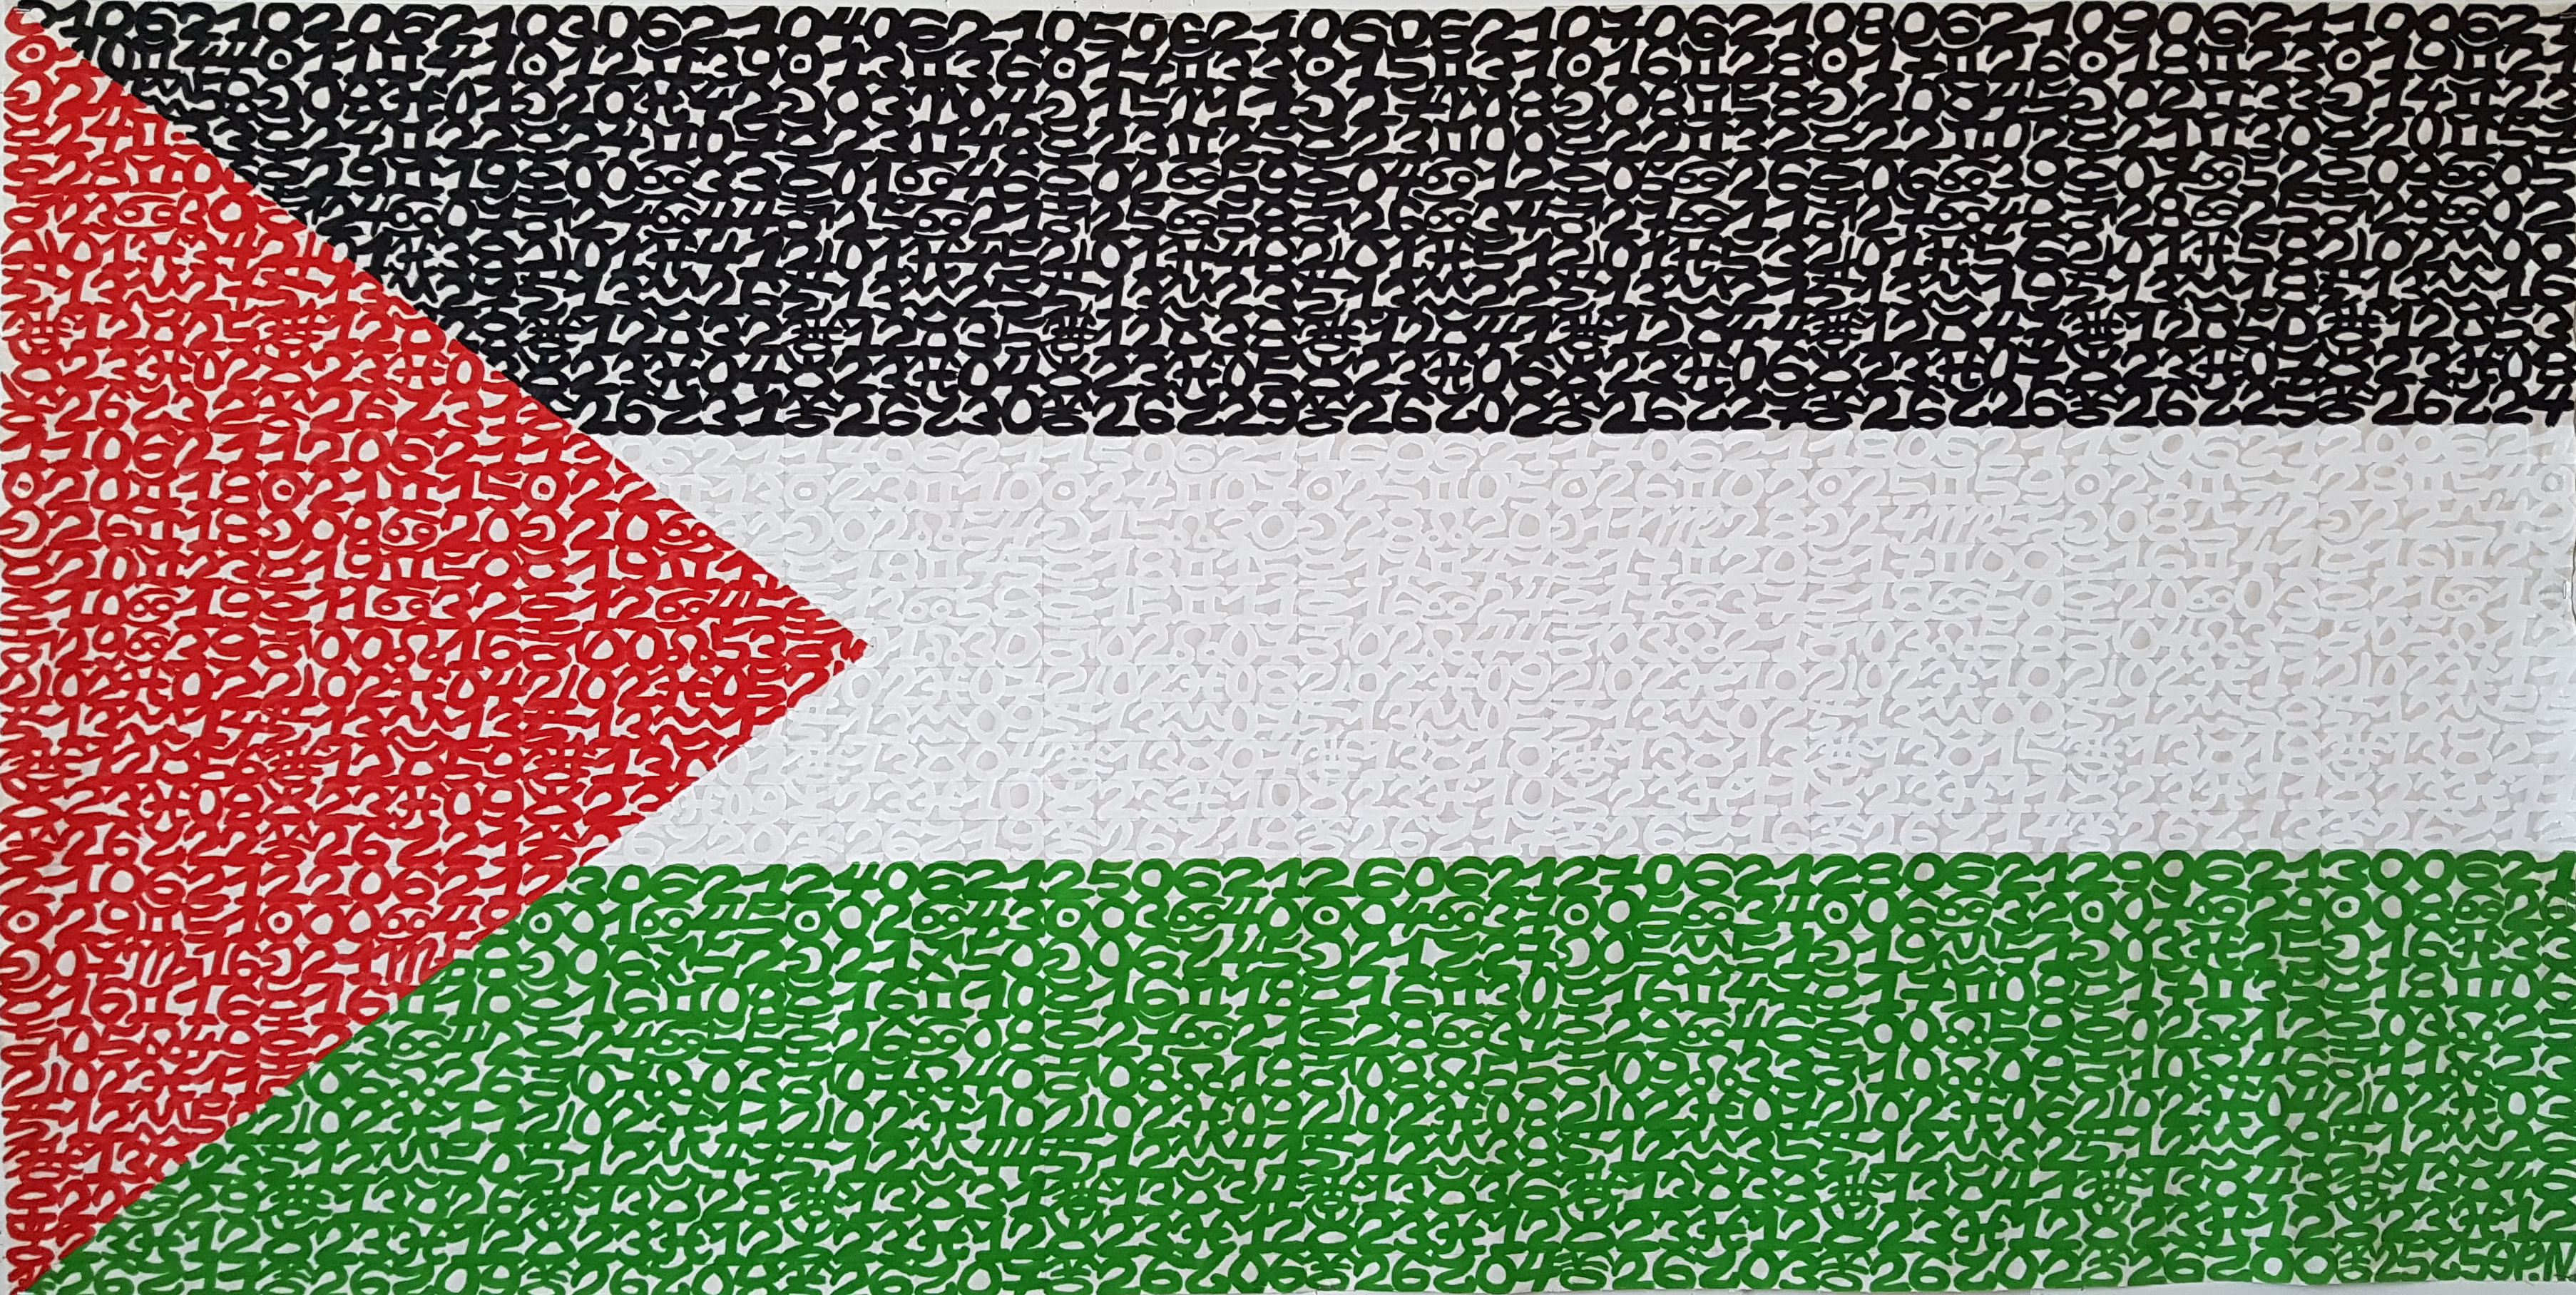 Drapeau de la Palestine, éphéméride du mois de Juin 2021, 6/12, 80 x 160 cm